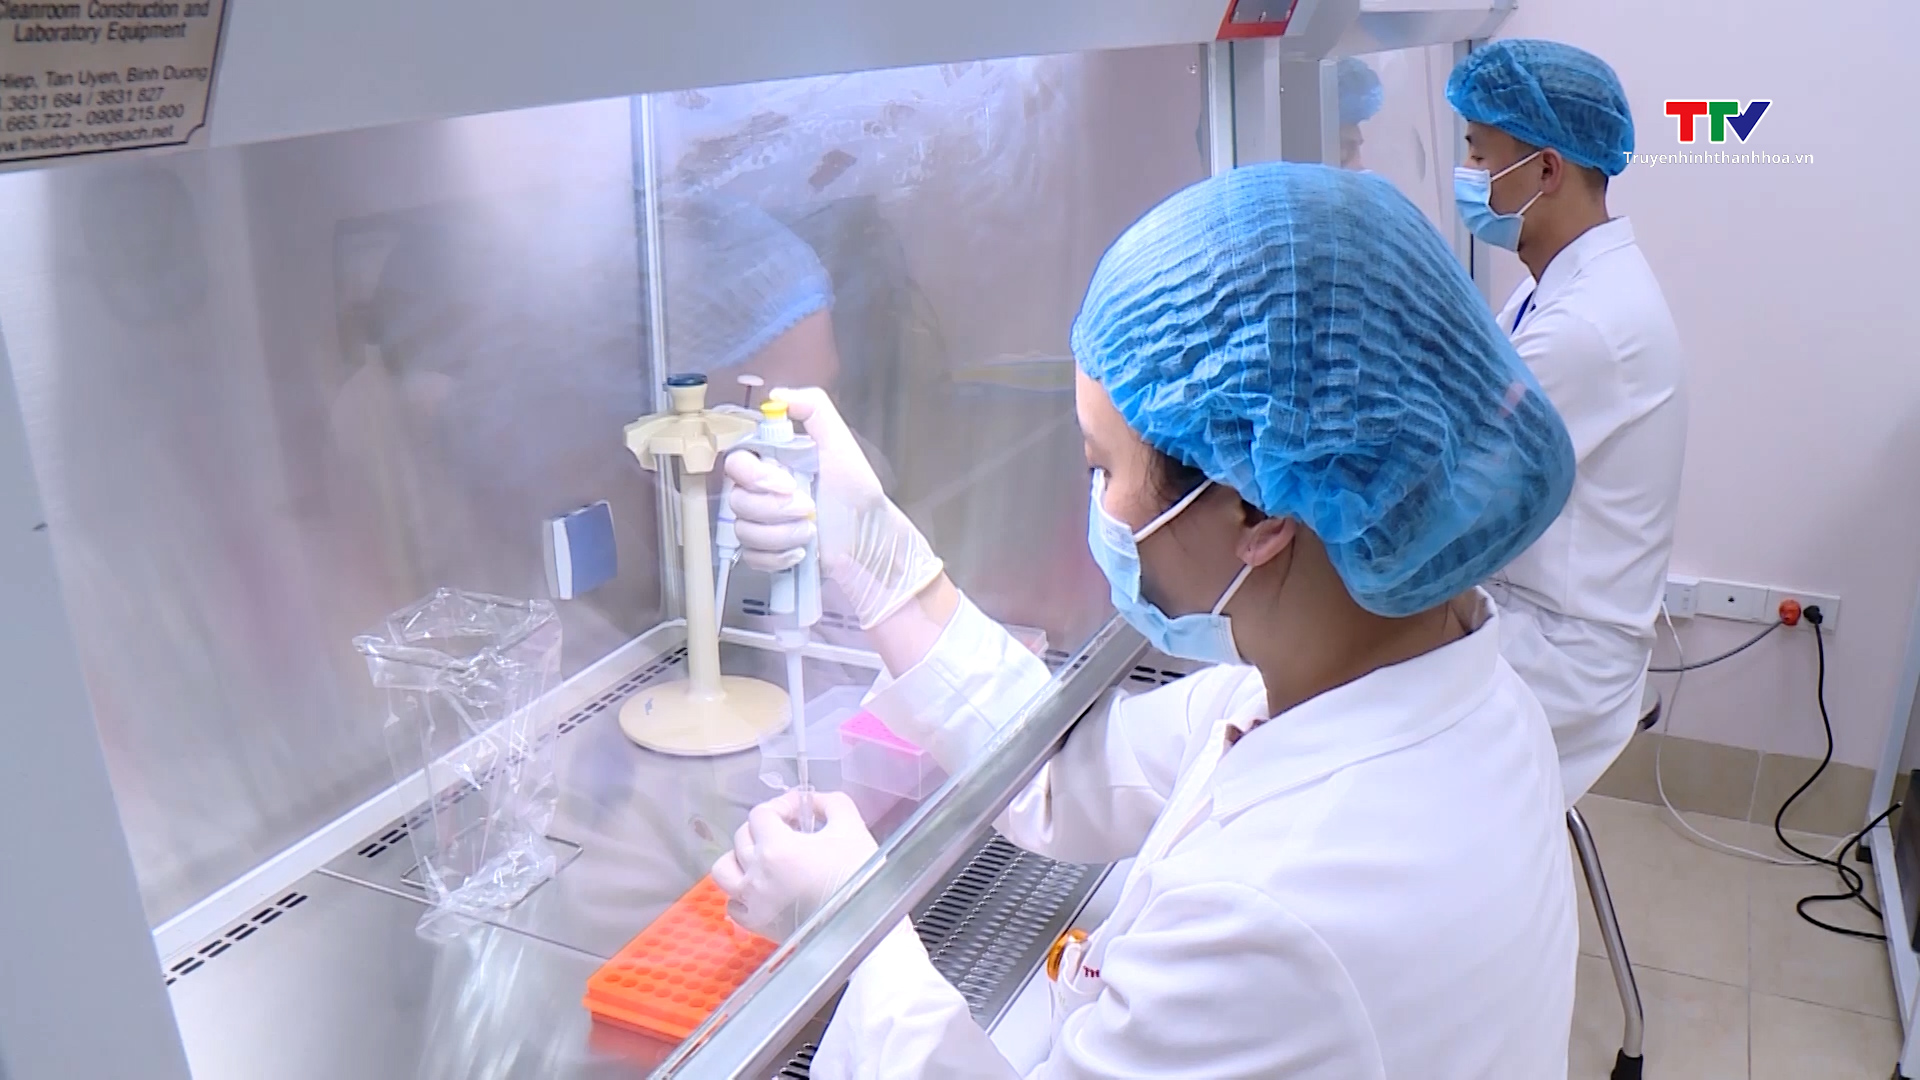 Bệnh viện Ung bướu tỉnh Thanh Hoá làm chủ kỹ thuật xét nghiệm sinh học phân tử về đột biến gen- Ảnh 2.